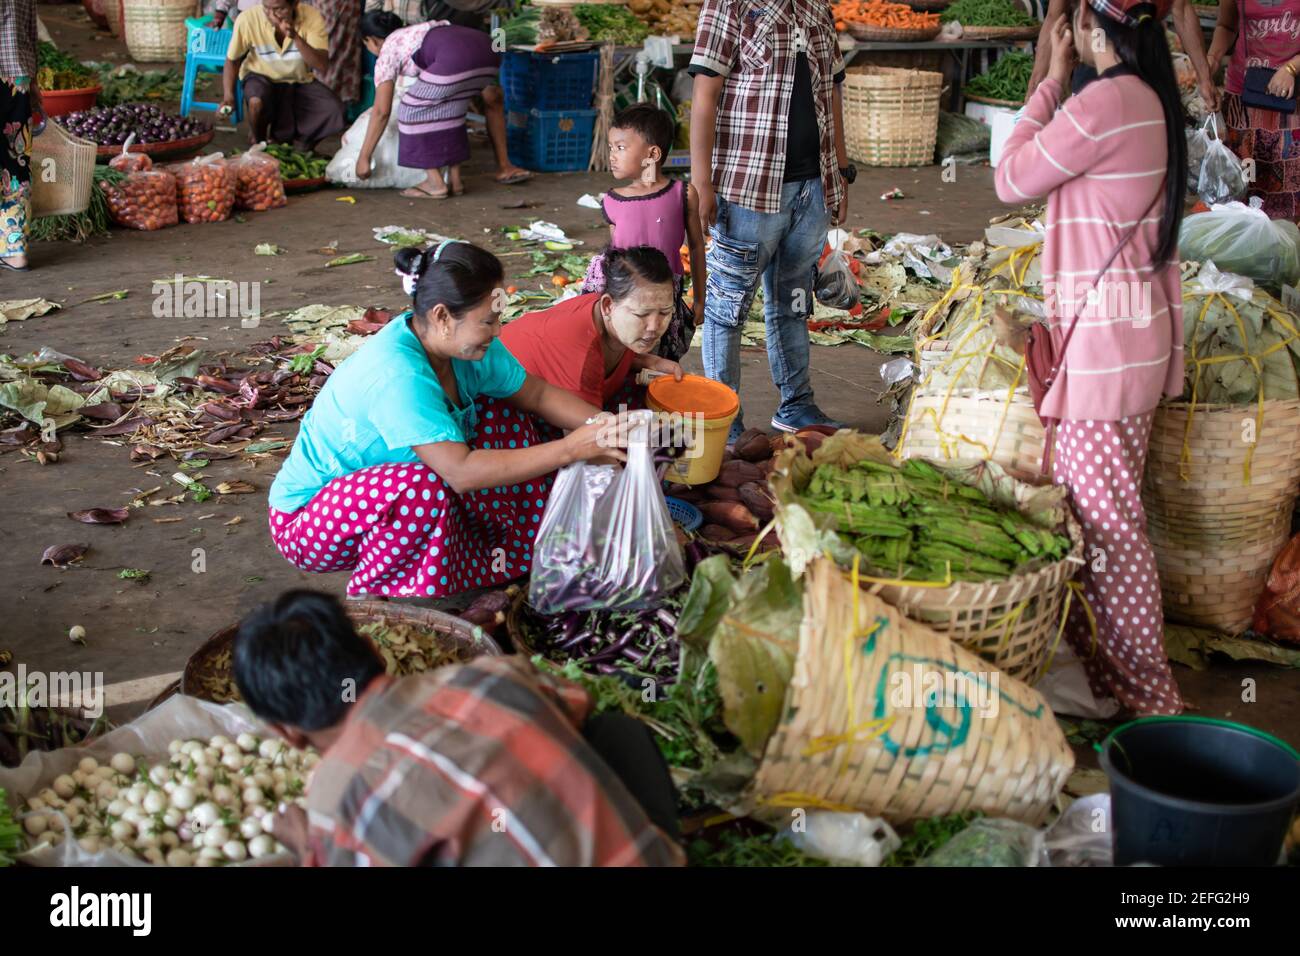 YANGON, MYANMAR - DECEMEBER 31 2019: Muchos birmanos visitan un mercado callejero local para comprar y vender frutas, verduras y comestibles en la vida cotidiana Foto de stock